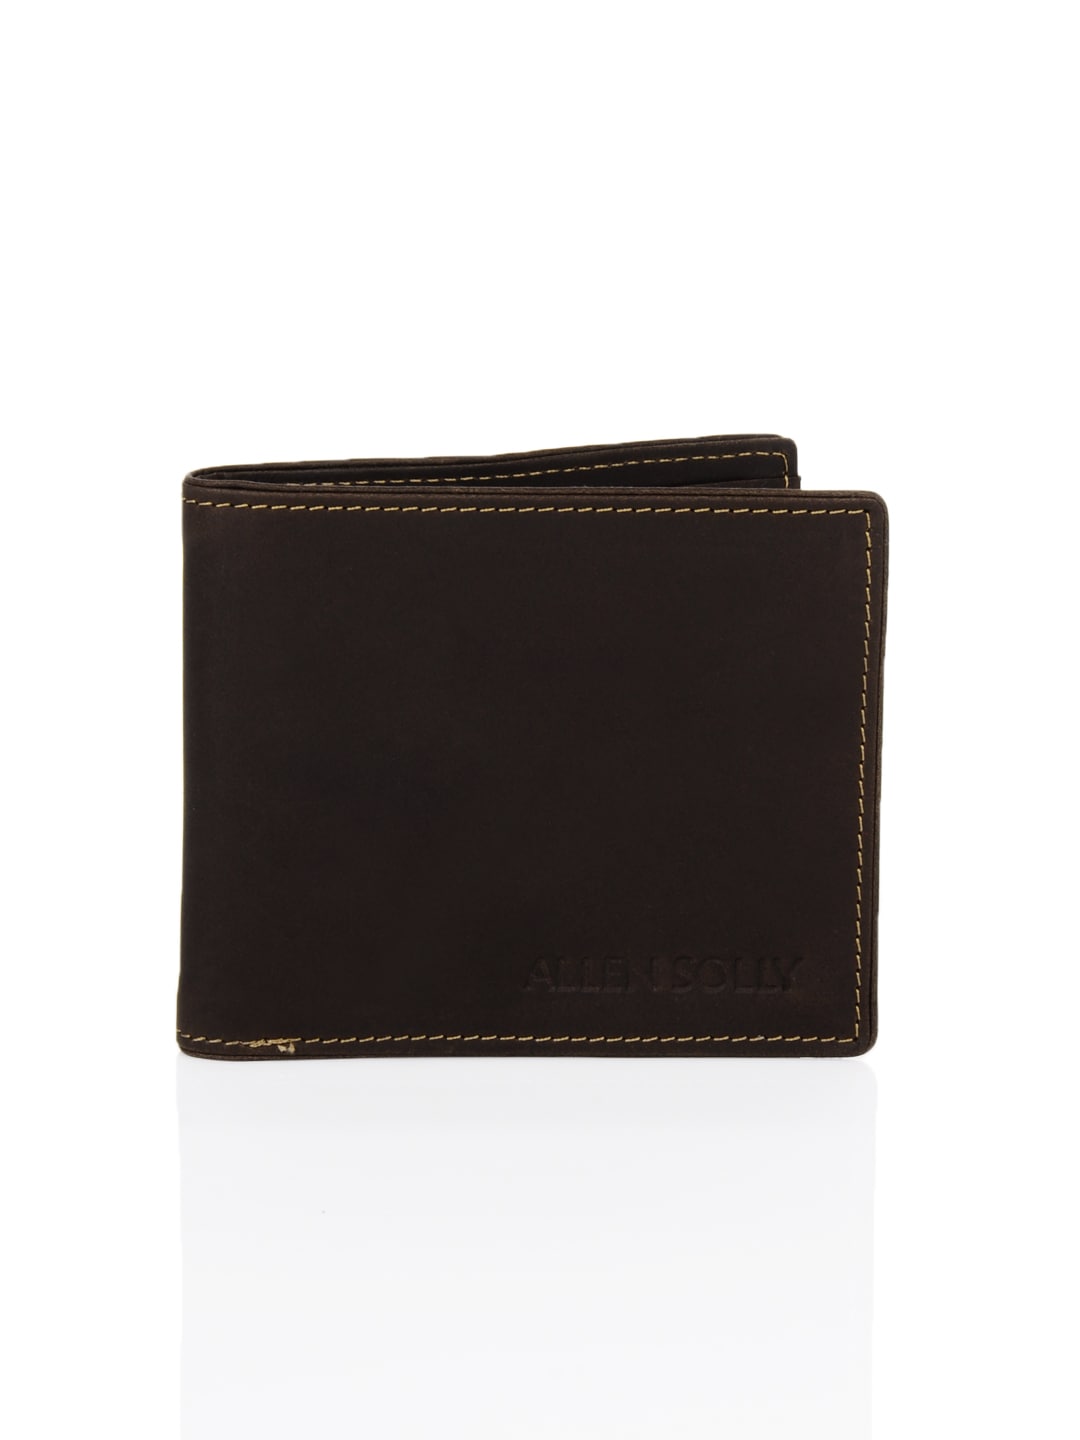 Allen Solly Men Leather Brown Wallet